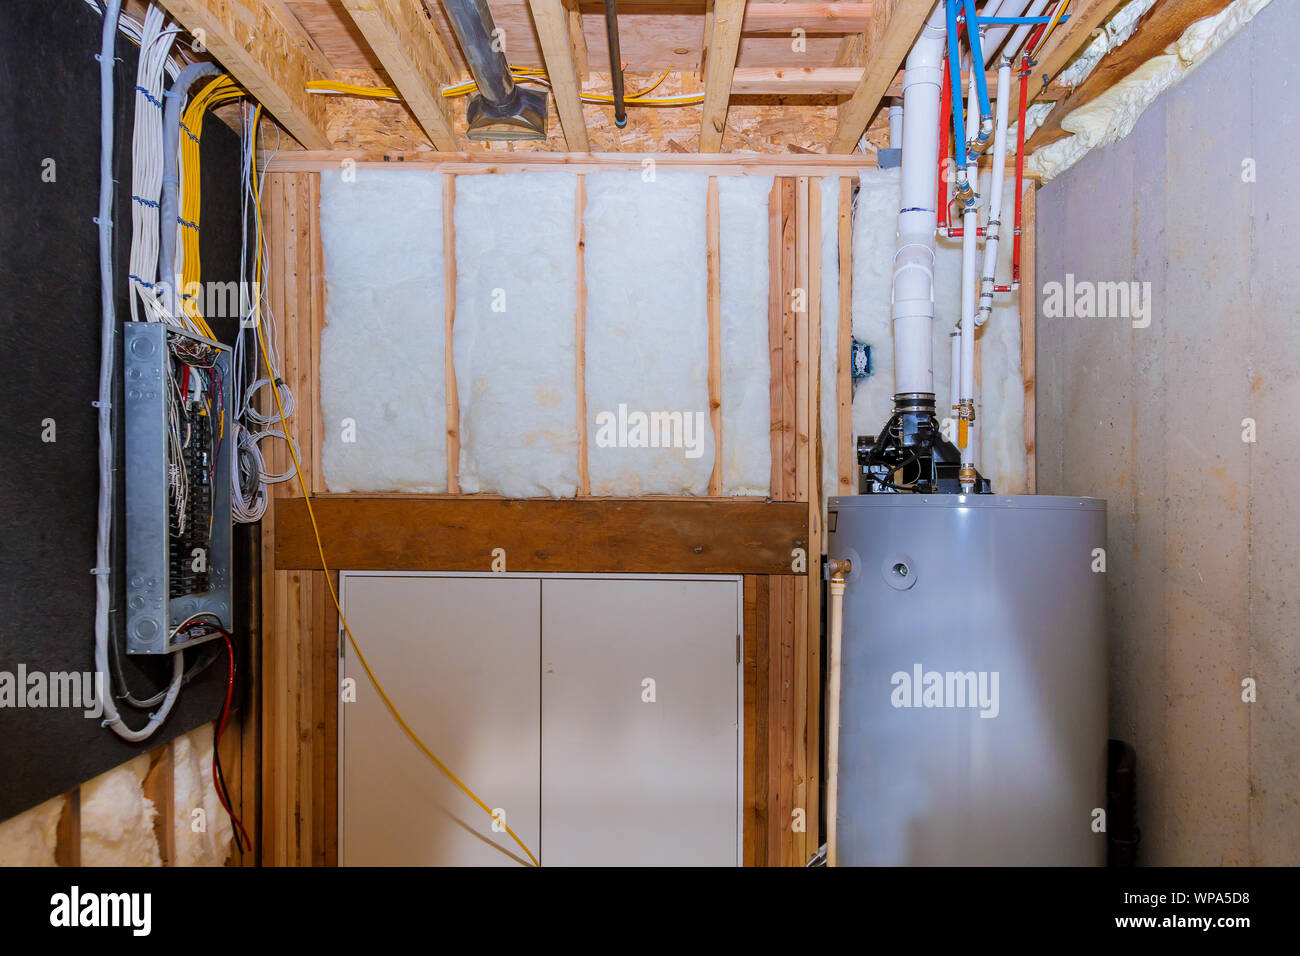 Les tuyaux de la chaudière et du système de chauffage d'une maison ossature bois avec sous-sol, panneau de câblage avec des câbles électriques dans les bornes Banque D'Images